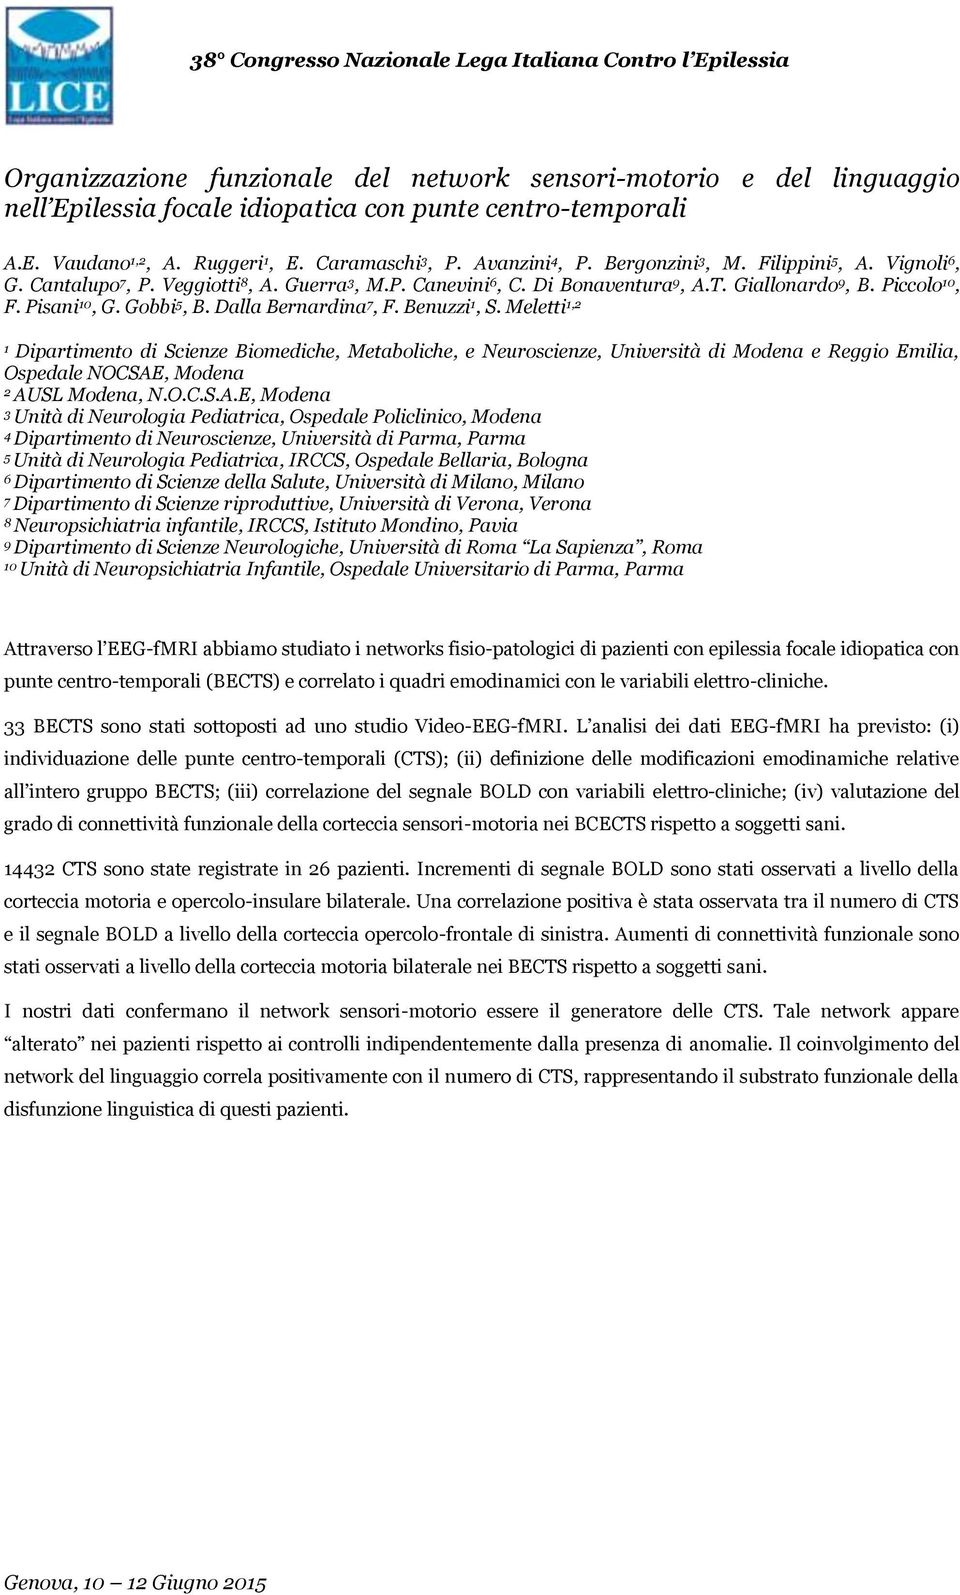 Dalla Bernardina 7, F. Benuzzi, S. Meletti, Dipartimento di Scienze Biomediche, Metaboliche, e Neuroscienze, Università di Modena e Reggio Emilia, Ospedale NOCSAE